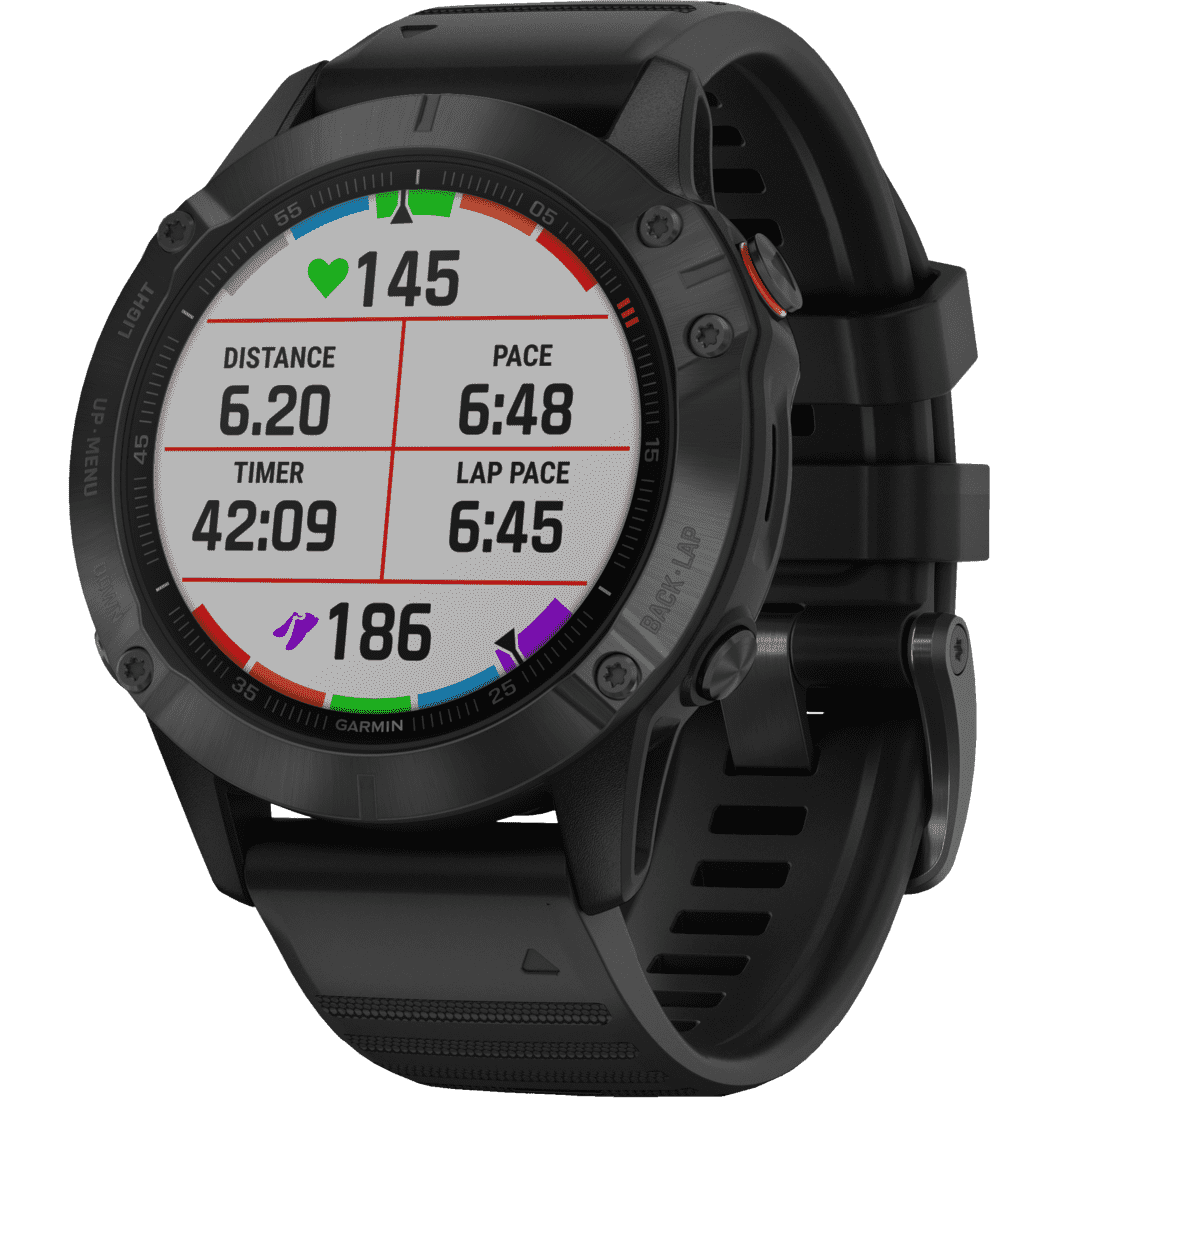 GARMIN Fenix 6 Pro Smartwatch Daten wie Laufzeit Laufstrecke Puls werden angezeigt